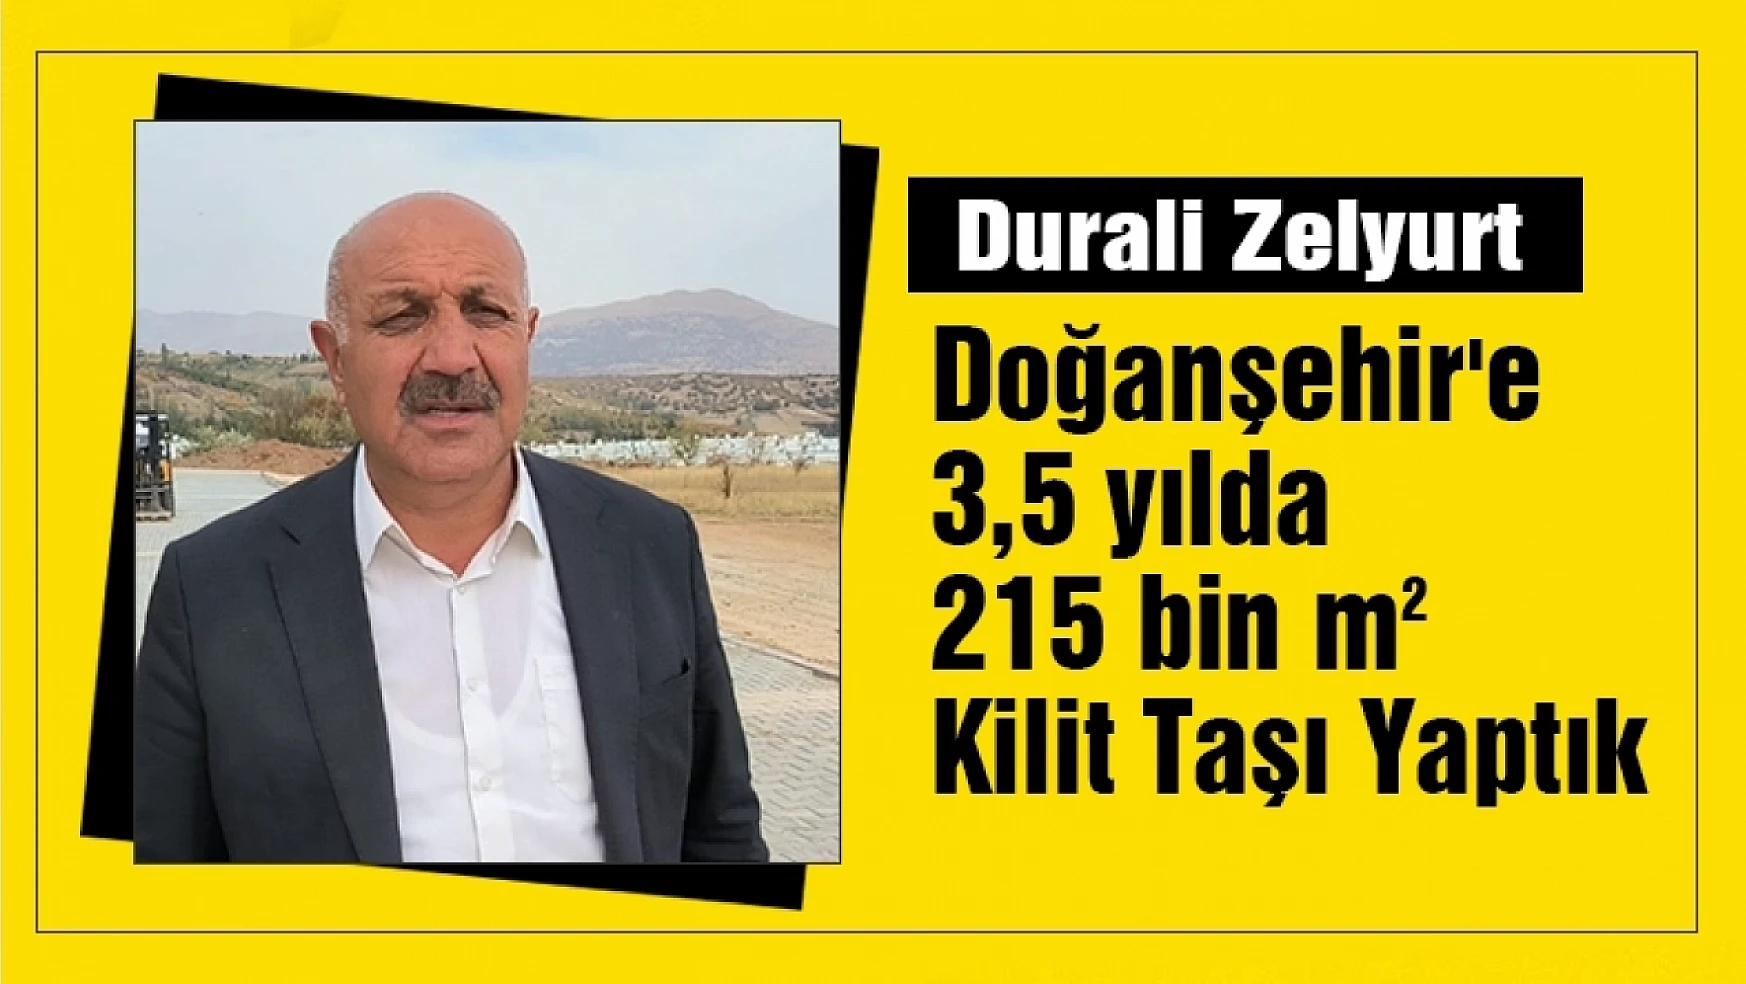 Doğanşehir'e 3,5 yılda 215 bin m2 Kilit Taşı Yaptık...